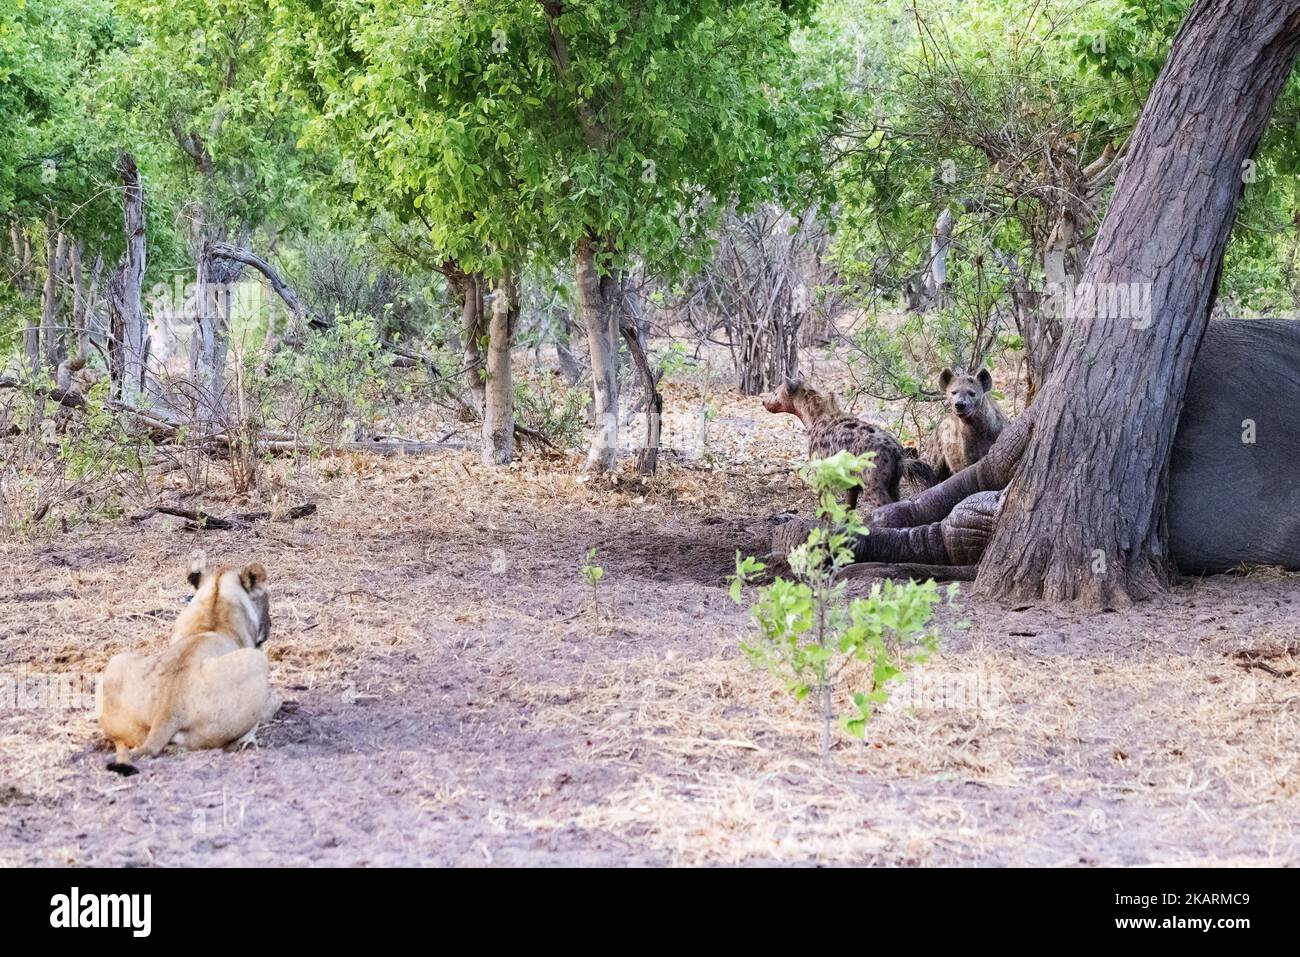 Un leone che guarda le iene avvistate che si nutrono della carcassa di un elefante; Okavango delta Botswana Africa. Animali africani. Foto Stock